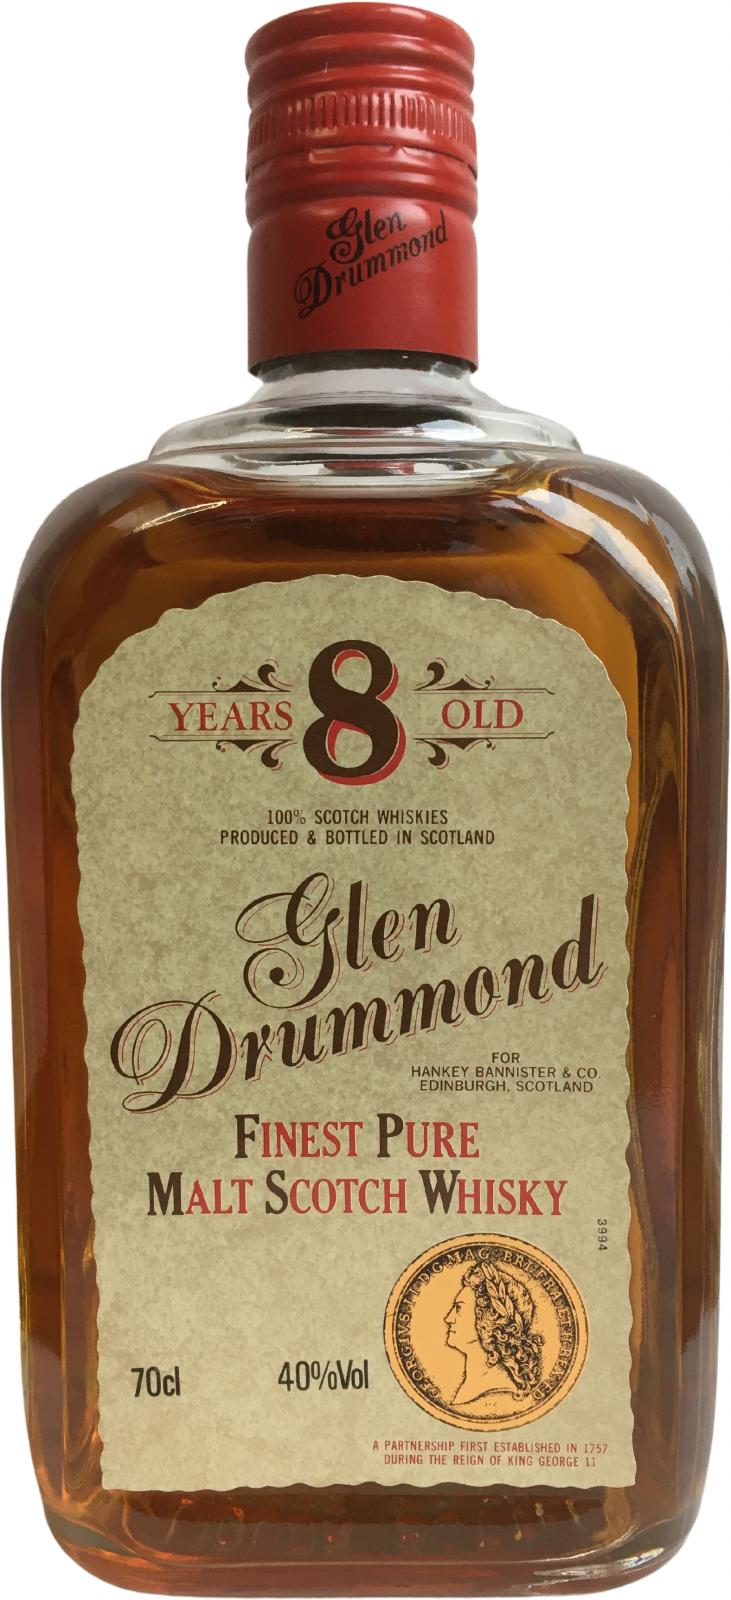 Glen Drummond Finest Pure Malt Scotch Whisky 40% 700ml